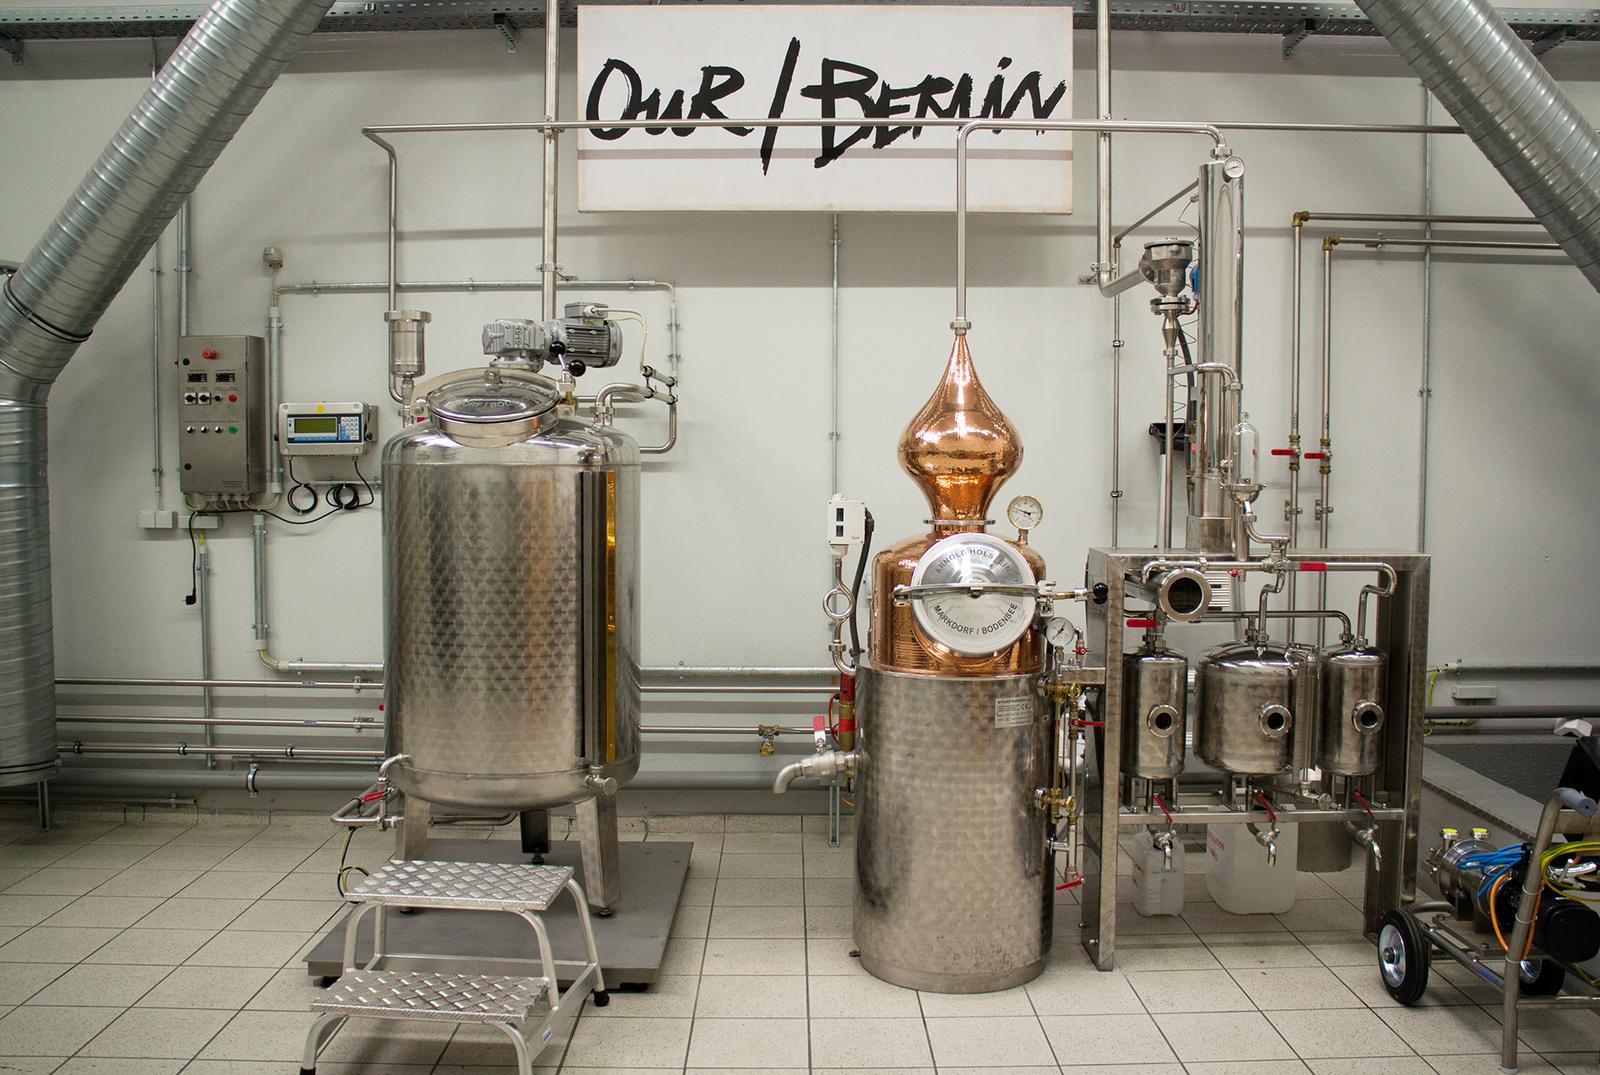 Das Business OurBerlin 2 destille